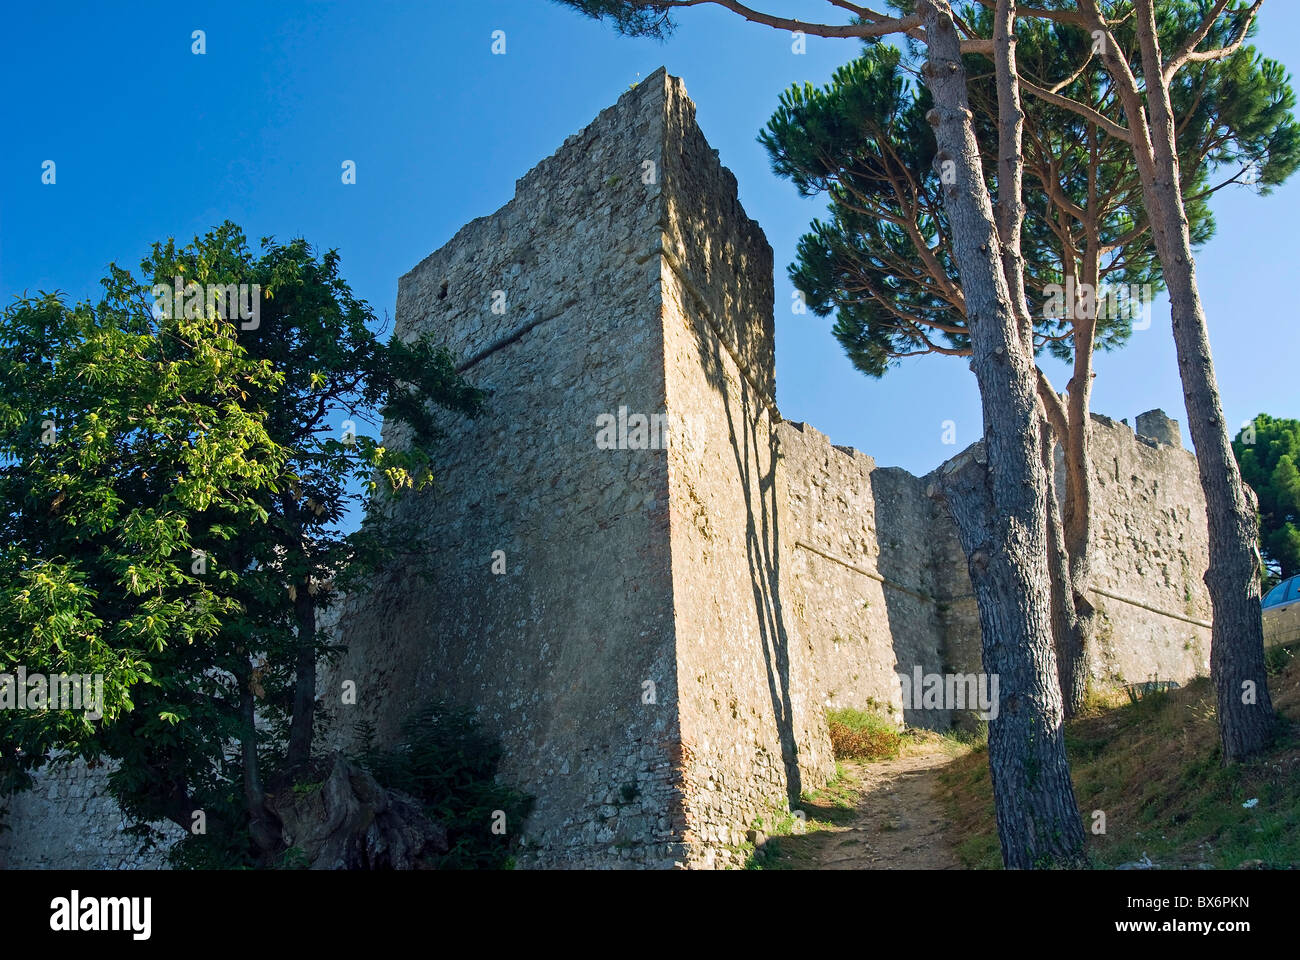 Forteresse Pisana, Marciana, Isola d'Elba, l'île d'Elbe, Toscane, Italie, Europe Banque D'Images